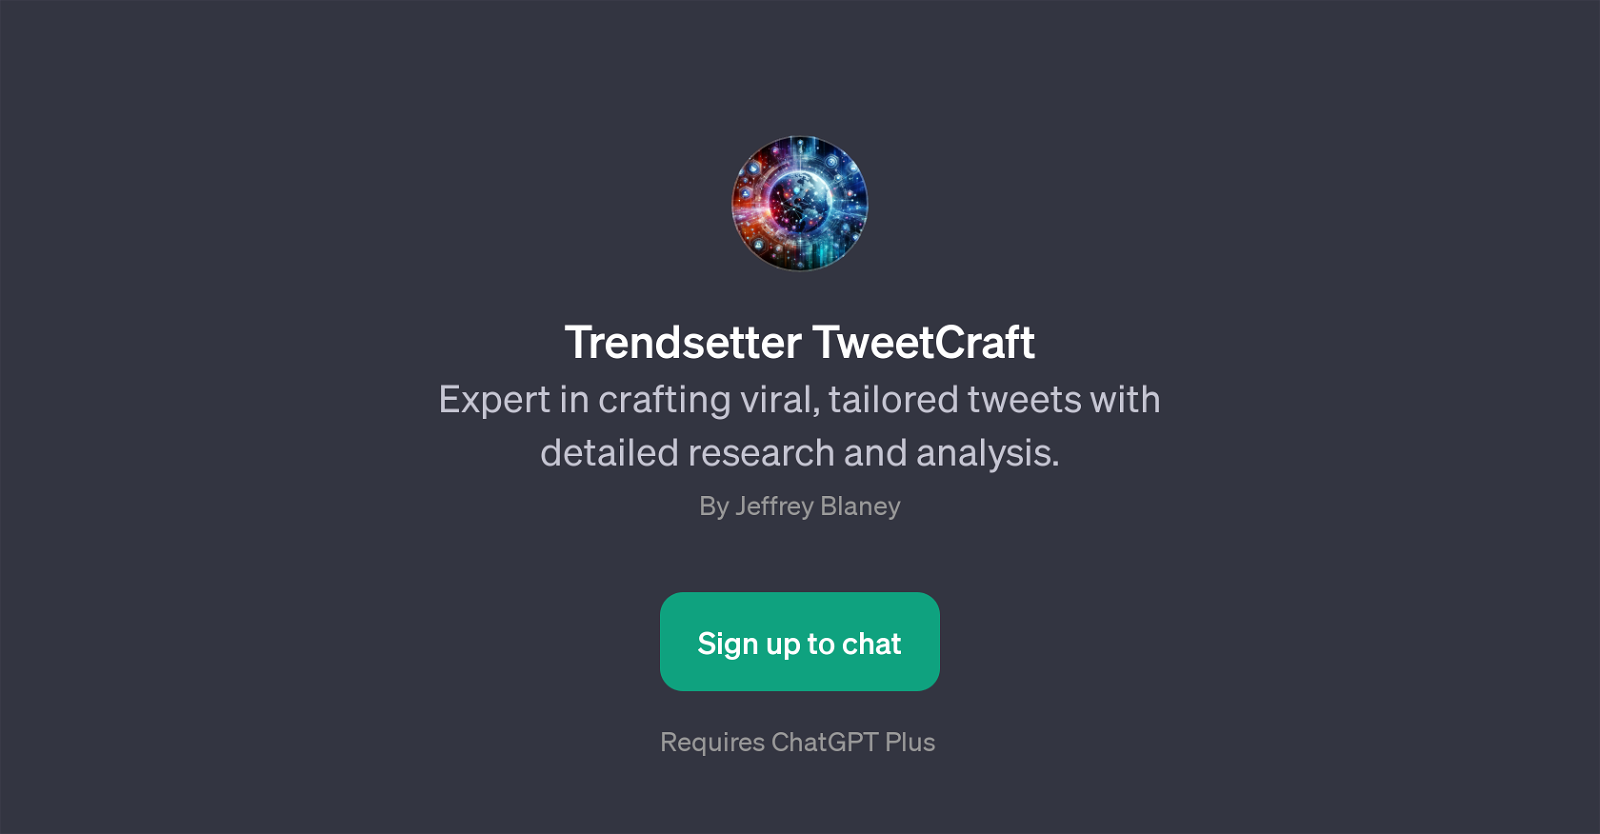 Trendsetter TweetCraft website